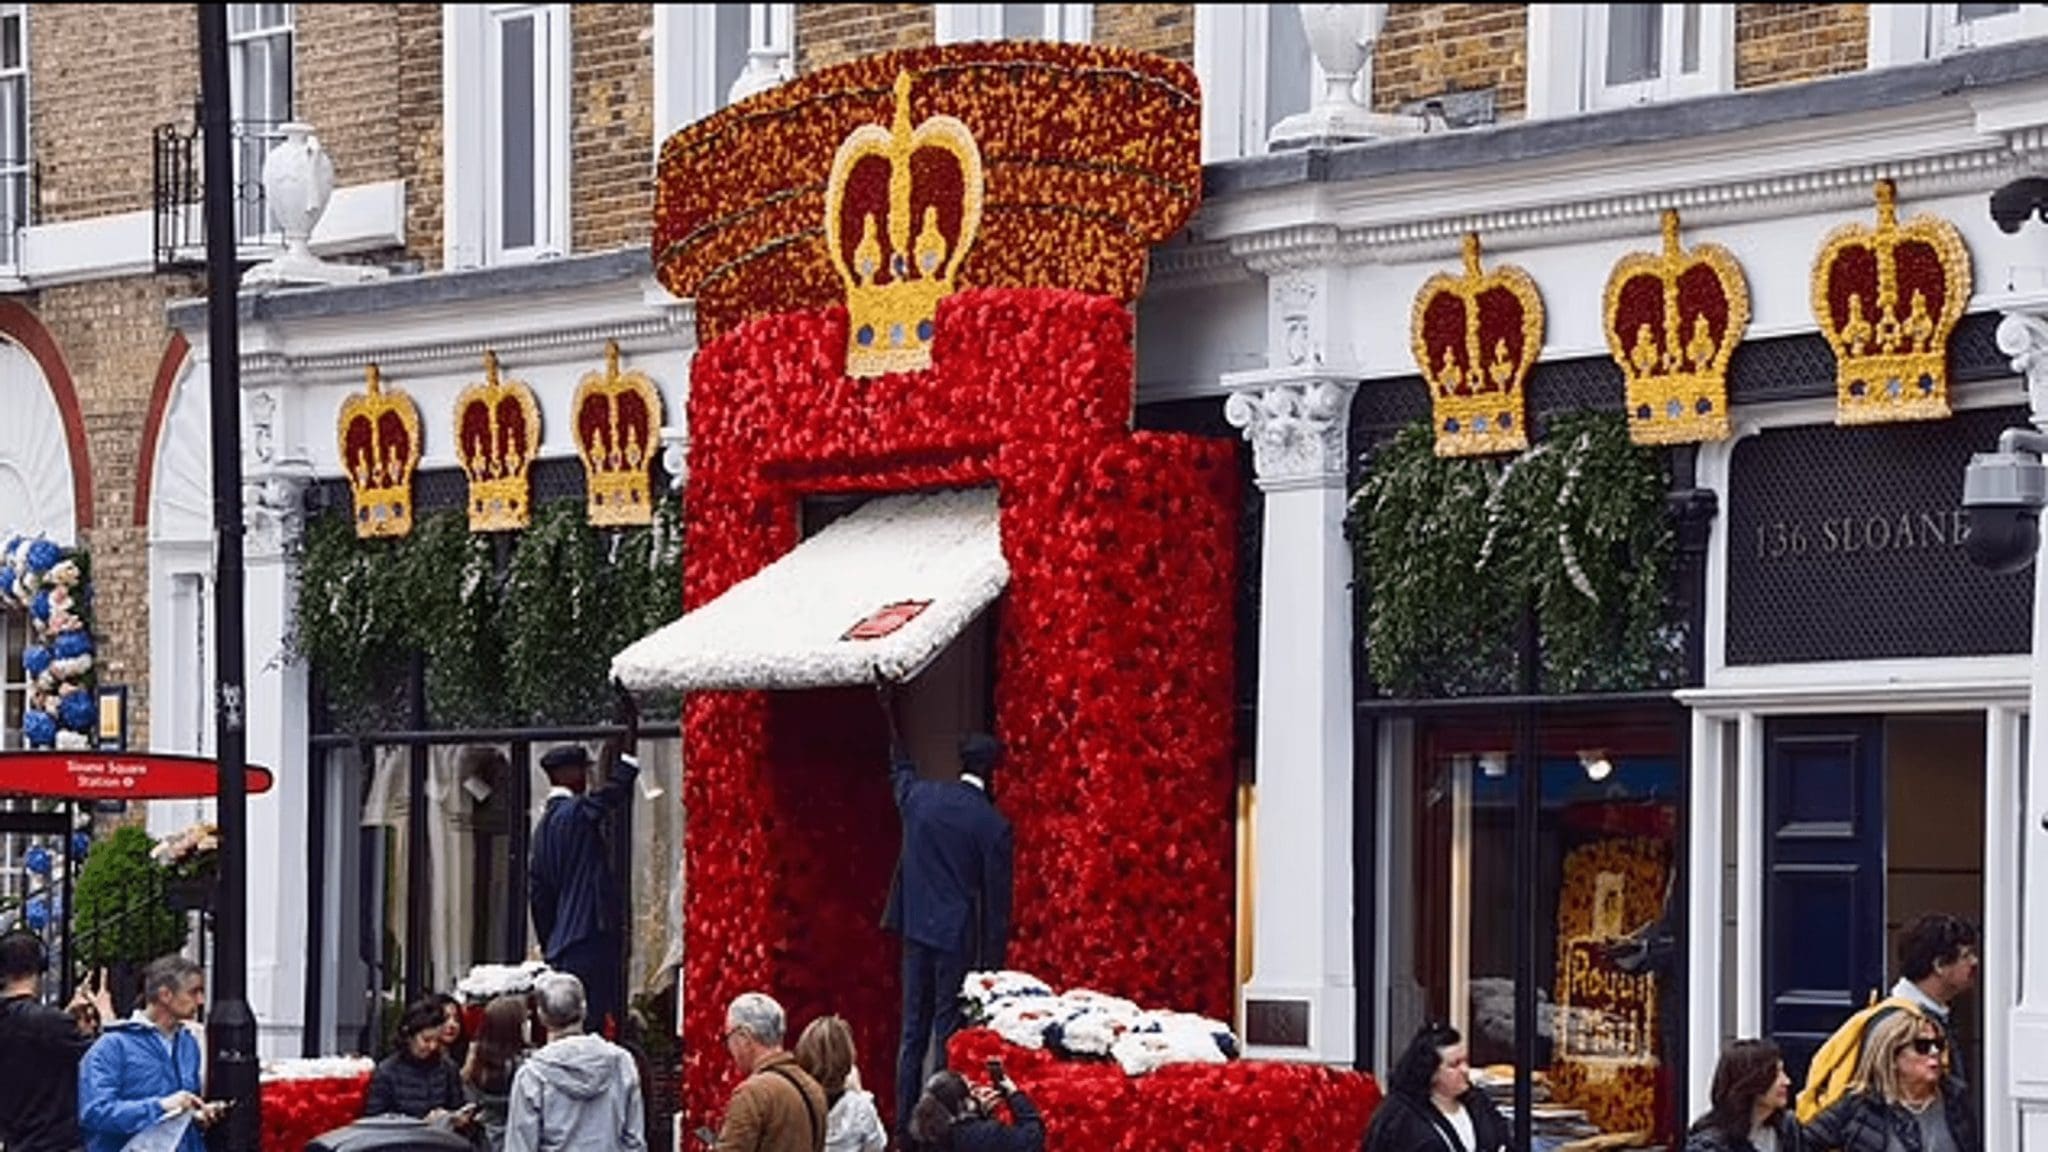 Queen Elizabeth II's flower arrangement vandalized in Chelsea